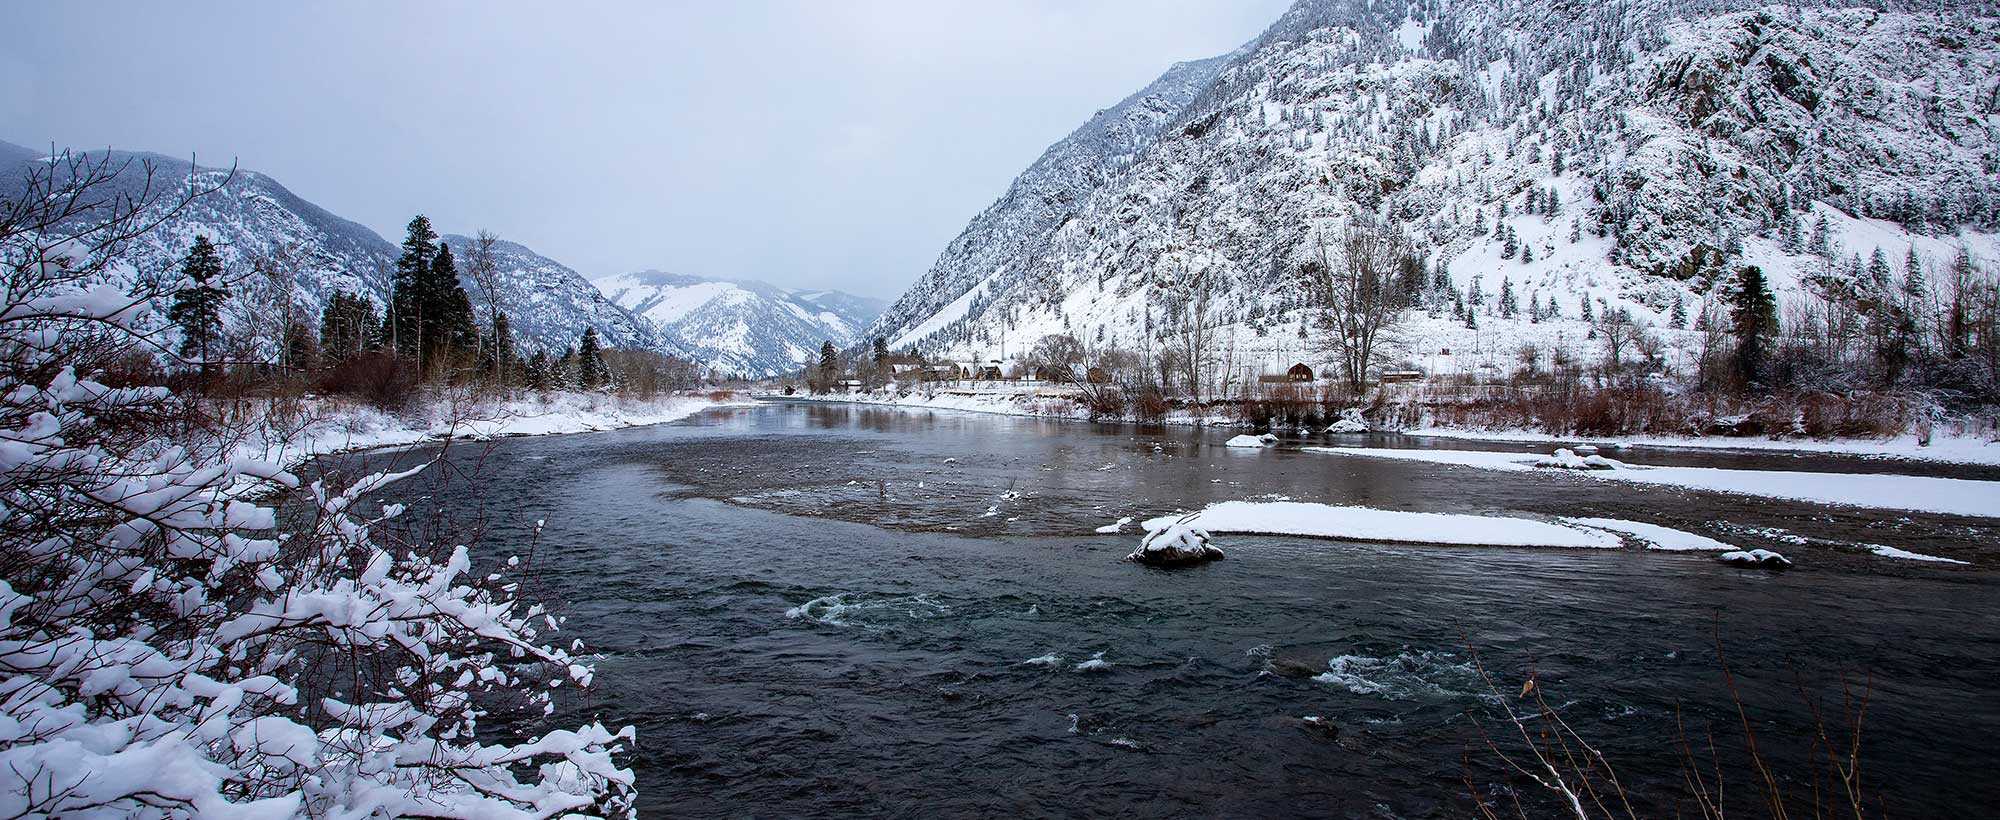 Similkameen River in winter